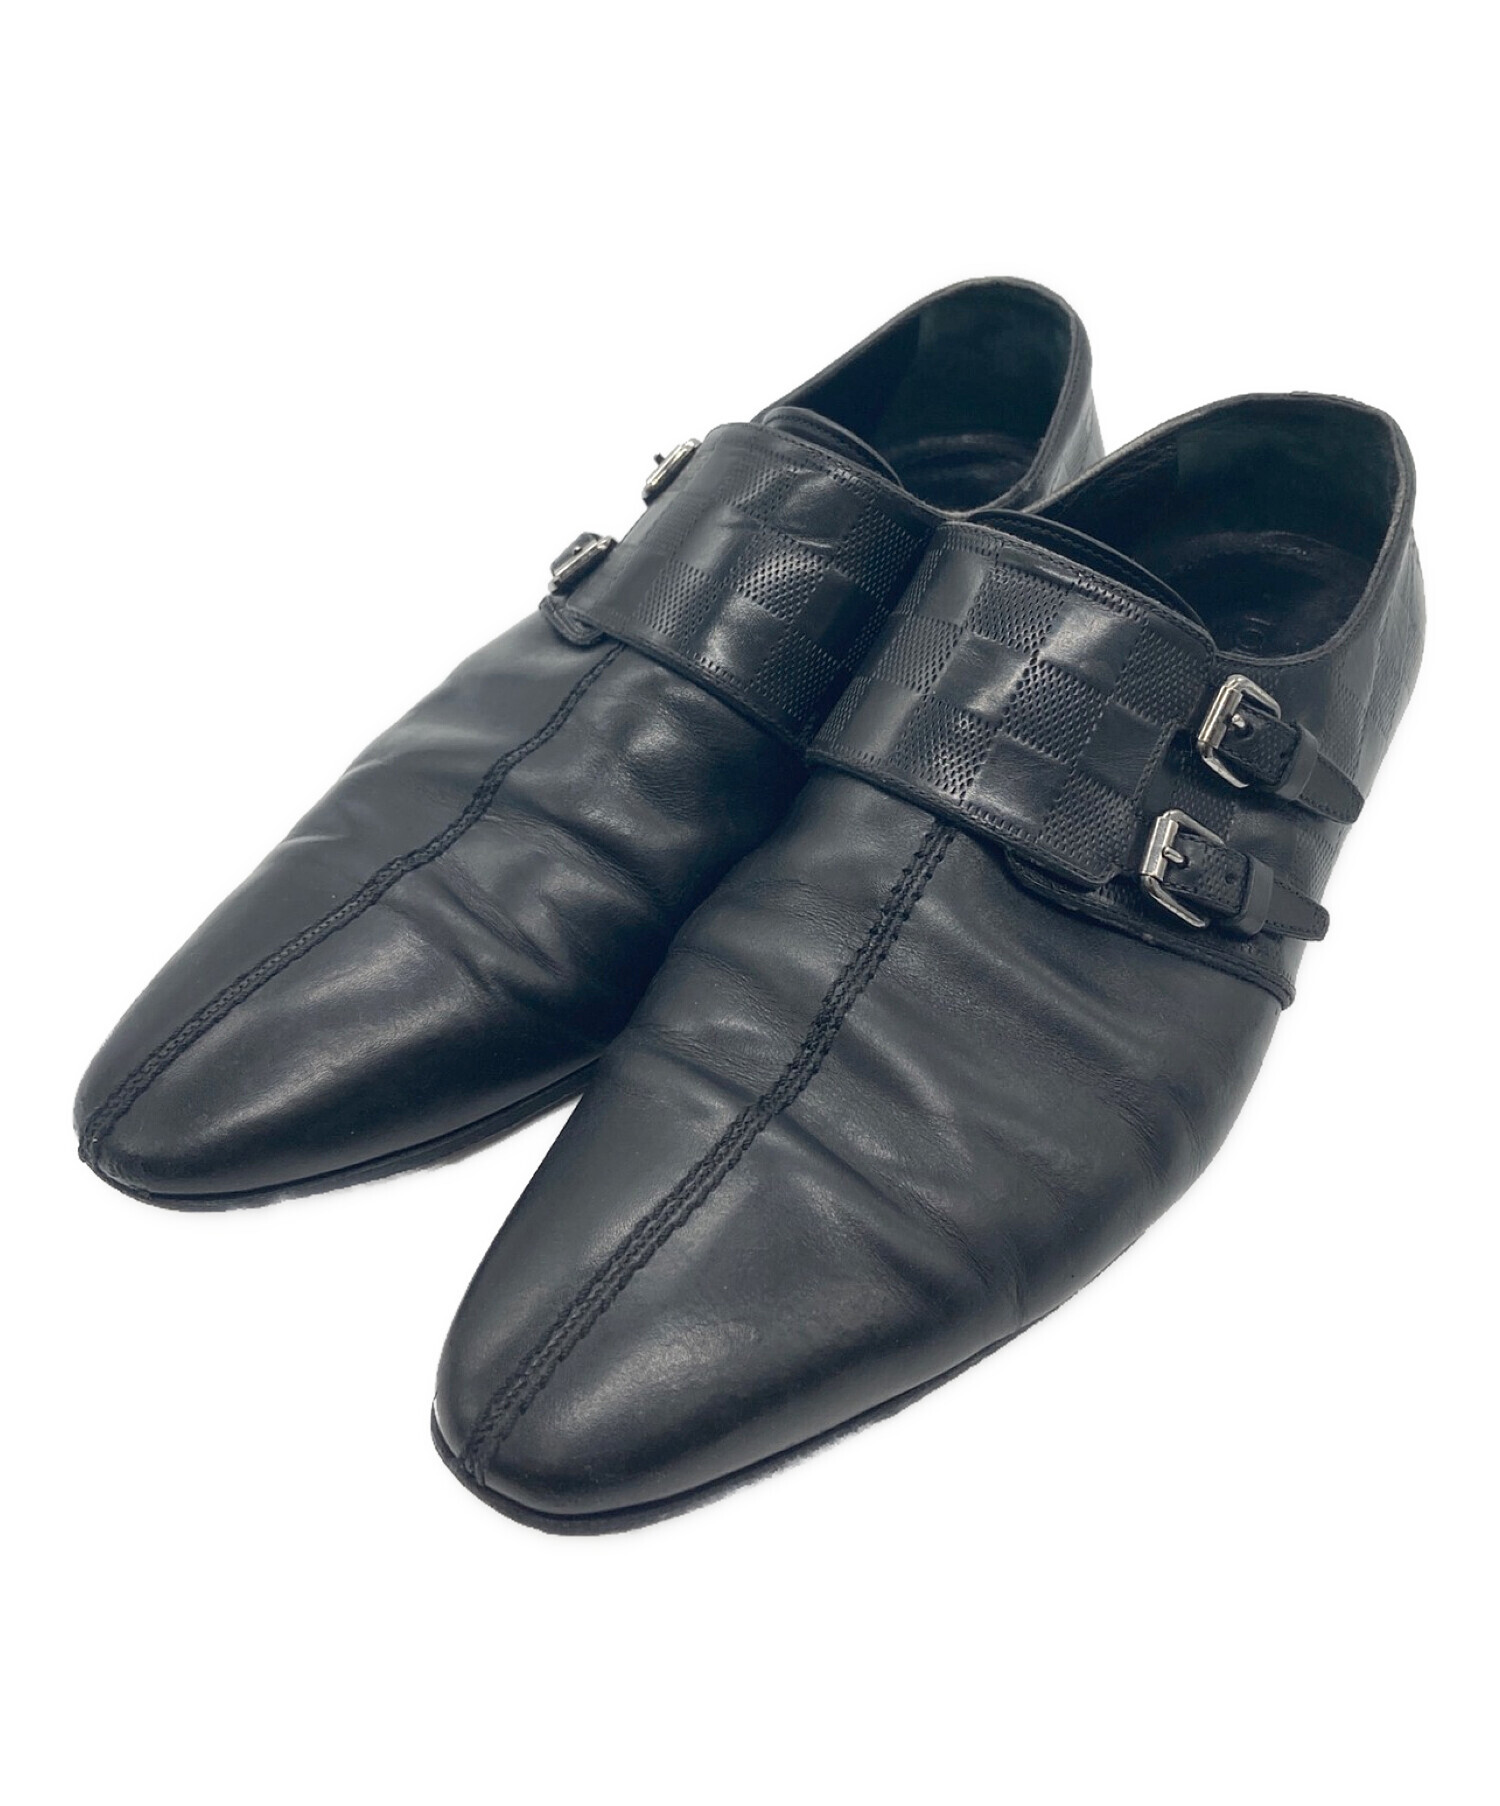 ルイヴィトン LOUIS VUITTON レザーシューズ モンクストラップシューズ ダミエ柄 カーフレザー 革靴 メンズ 9.5M(28.5cm相当) ブラック